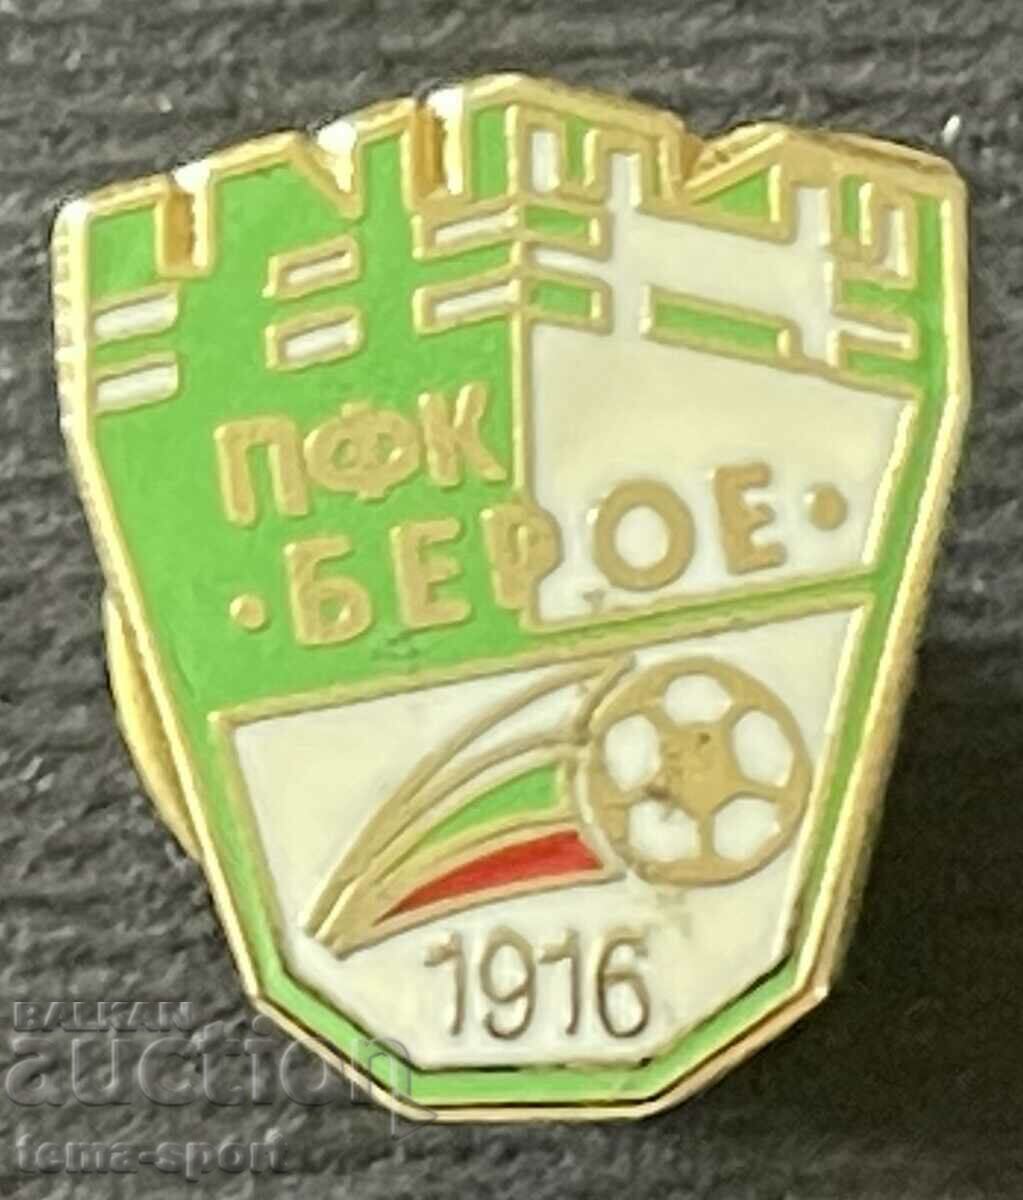 716 България знак Футболен клуб Берое емайл